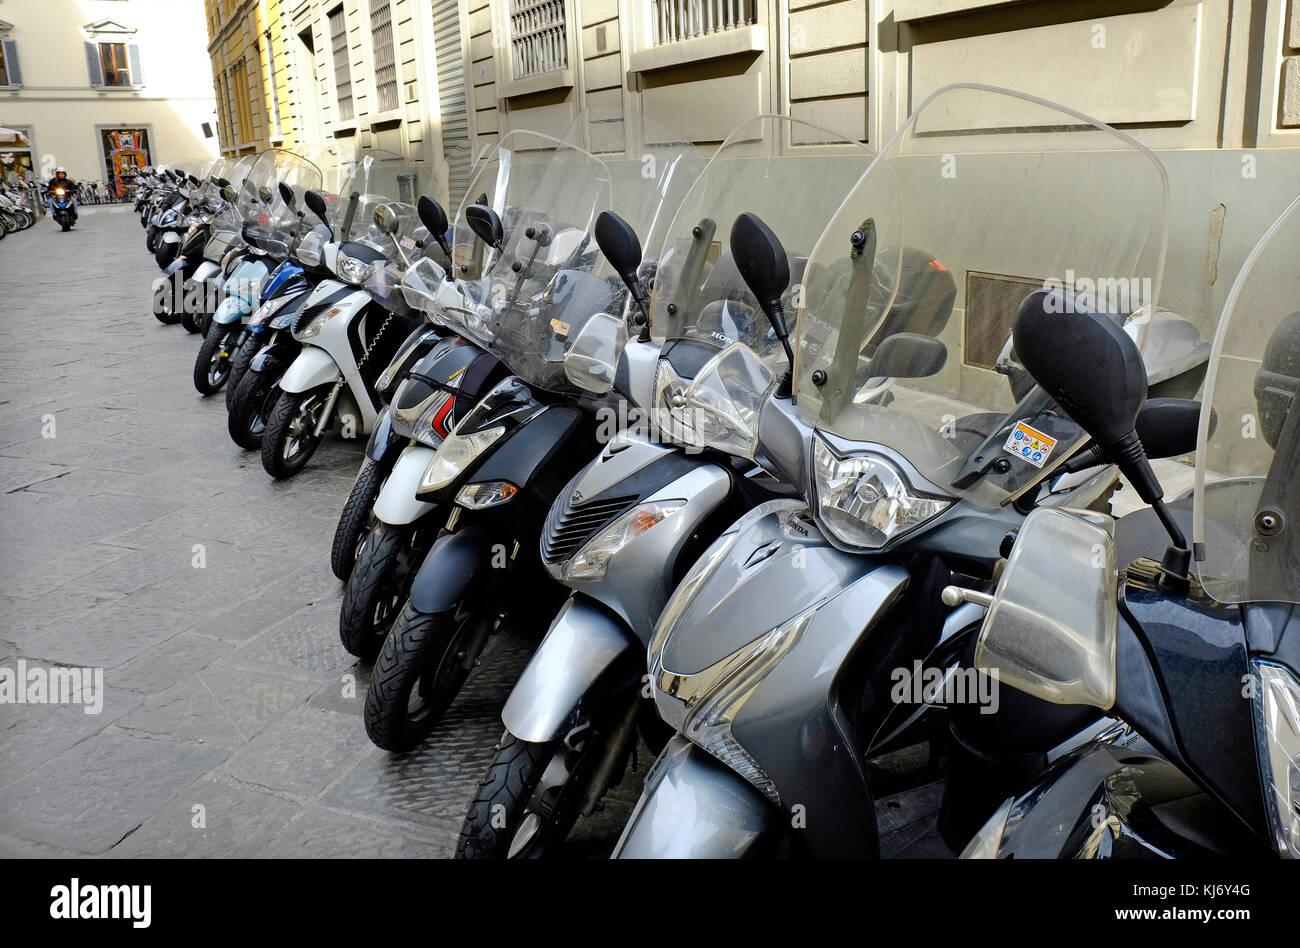 Scooter parcheggiato sulla strada, Firenze, Italia Foto Stock